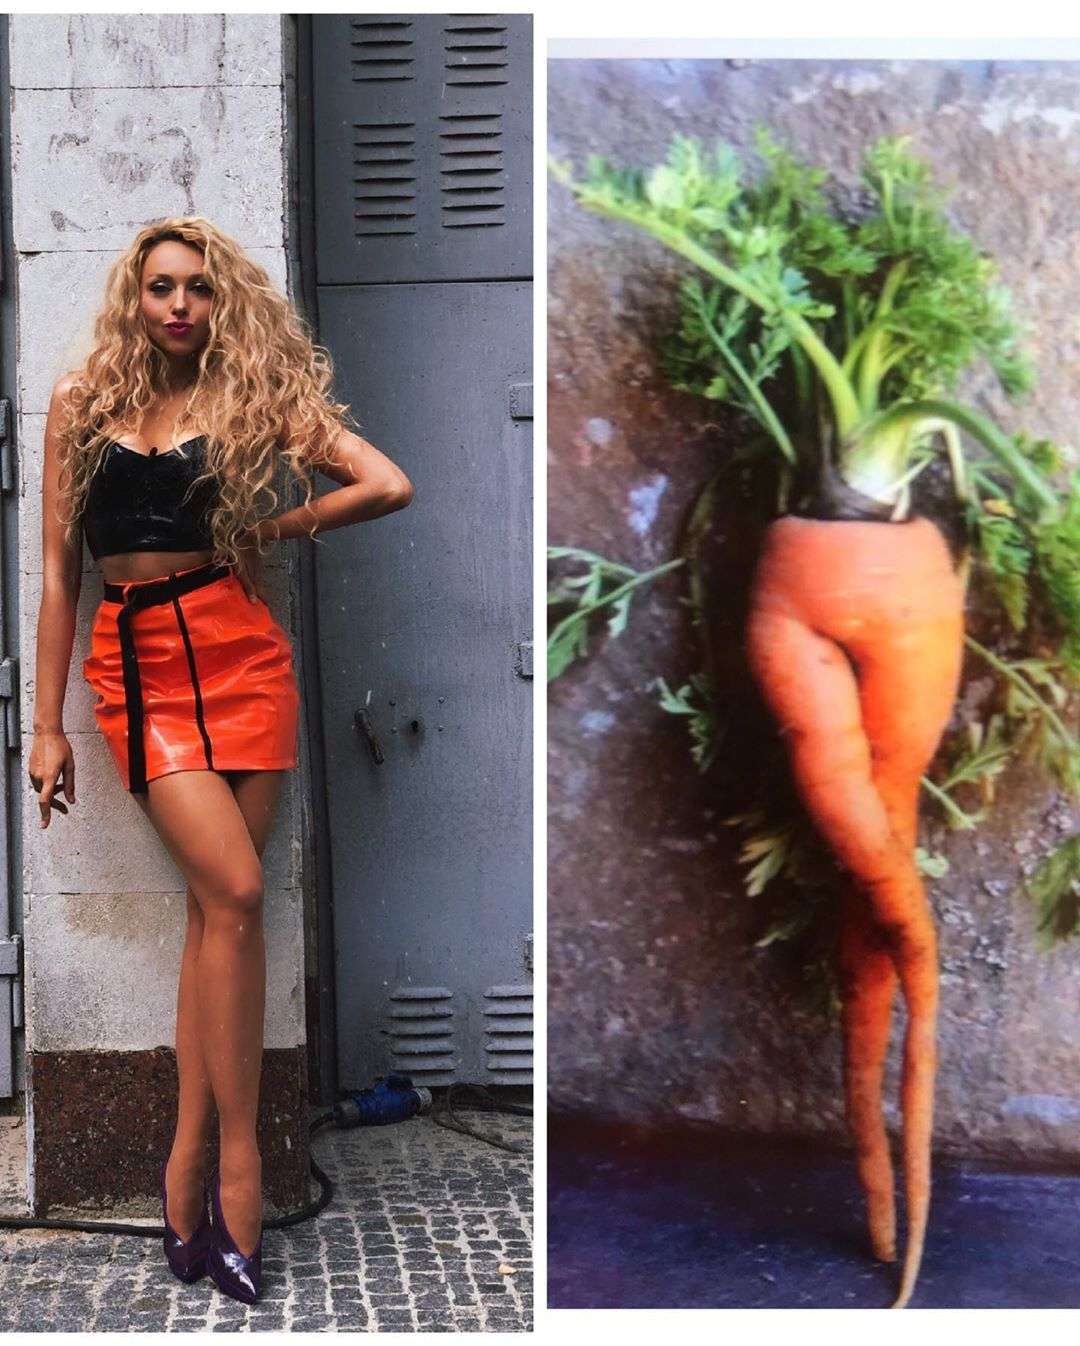 Неистовая Оля Полякова и себя потроллила, и собственно фото с морковью сравнила - фото 441590